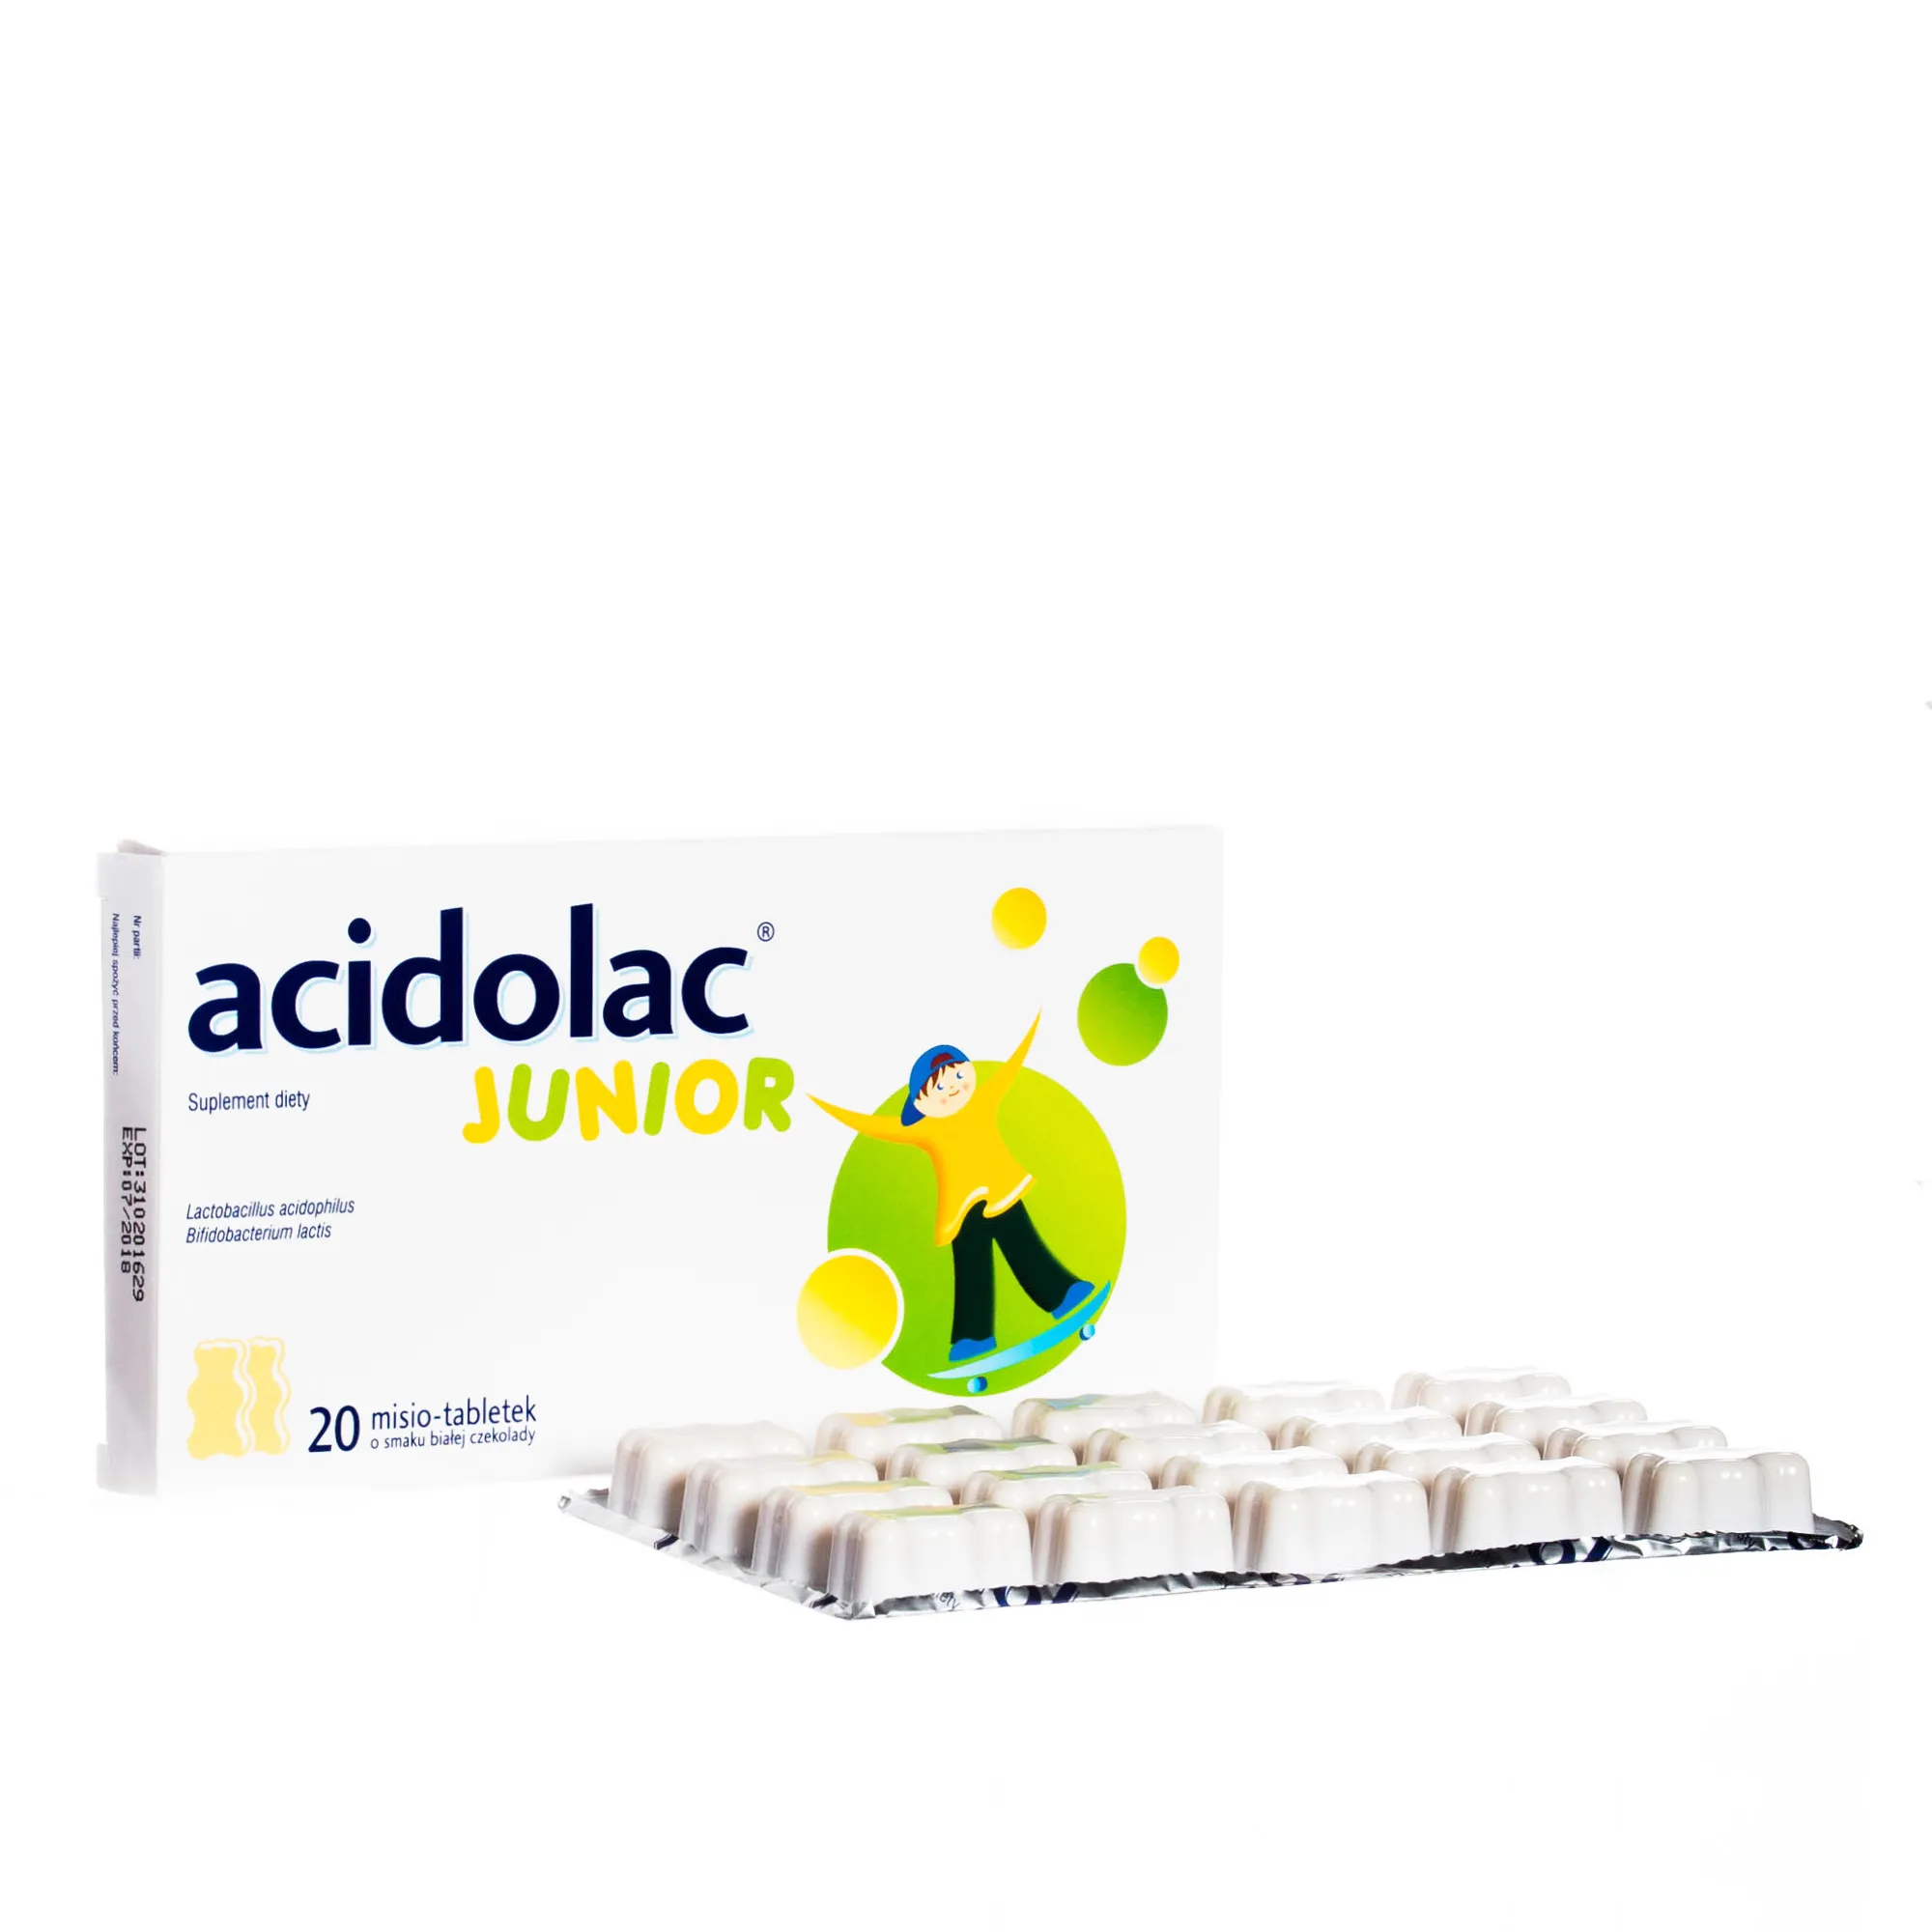 Acidolac Junior - suplement diety wspomagający prawidłowe działanie układu odpornościowego u dzieci, 20 tabletek. 